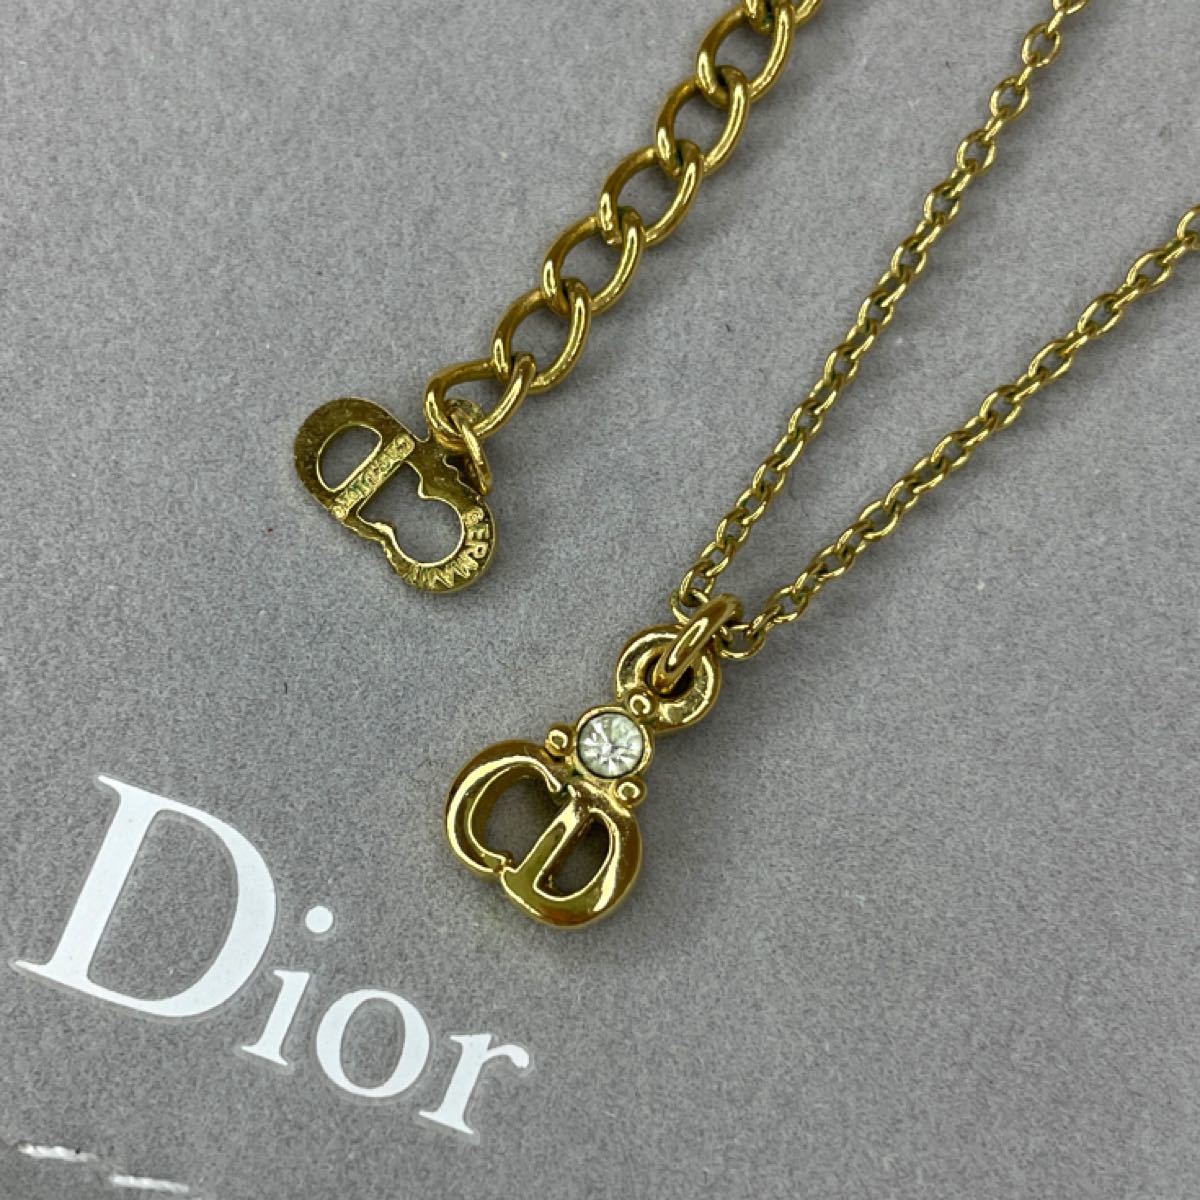 安い販売 Christian Dior 美品 ネックレス ストーン ロゴ ディオール ネックレス